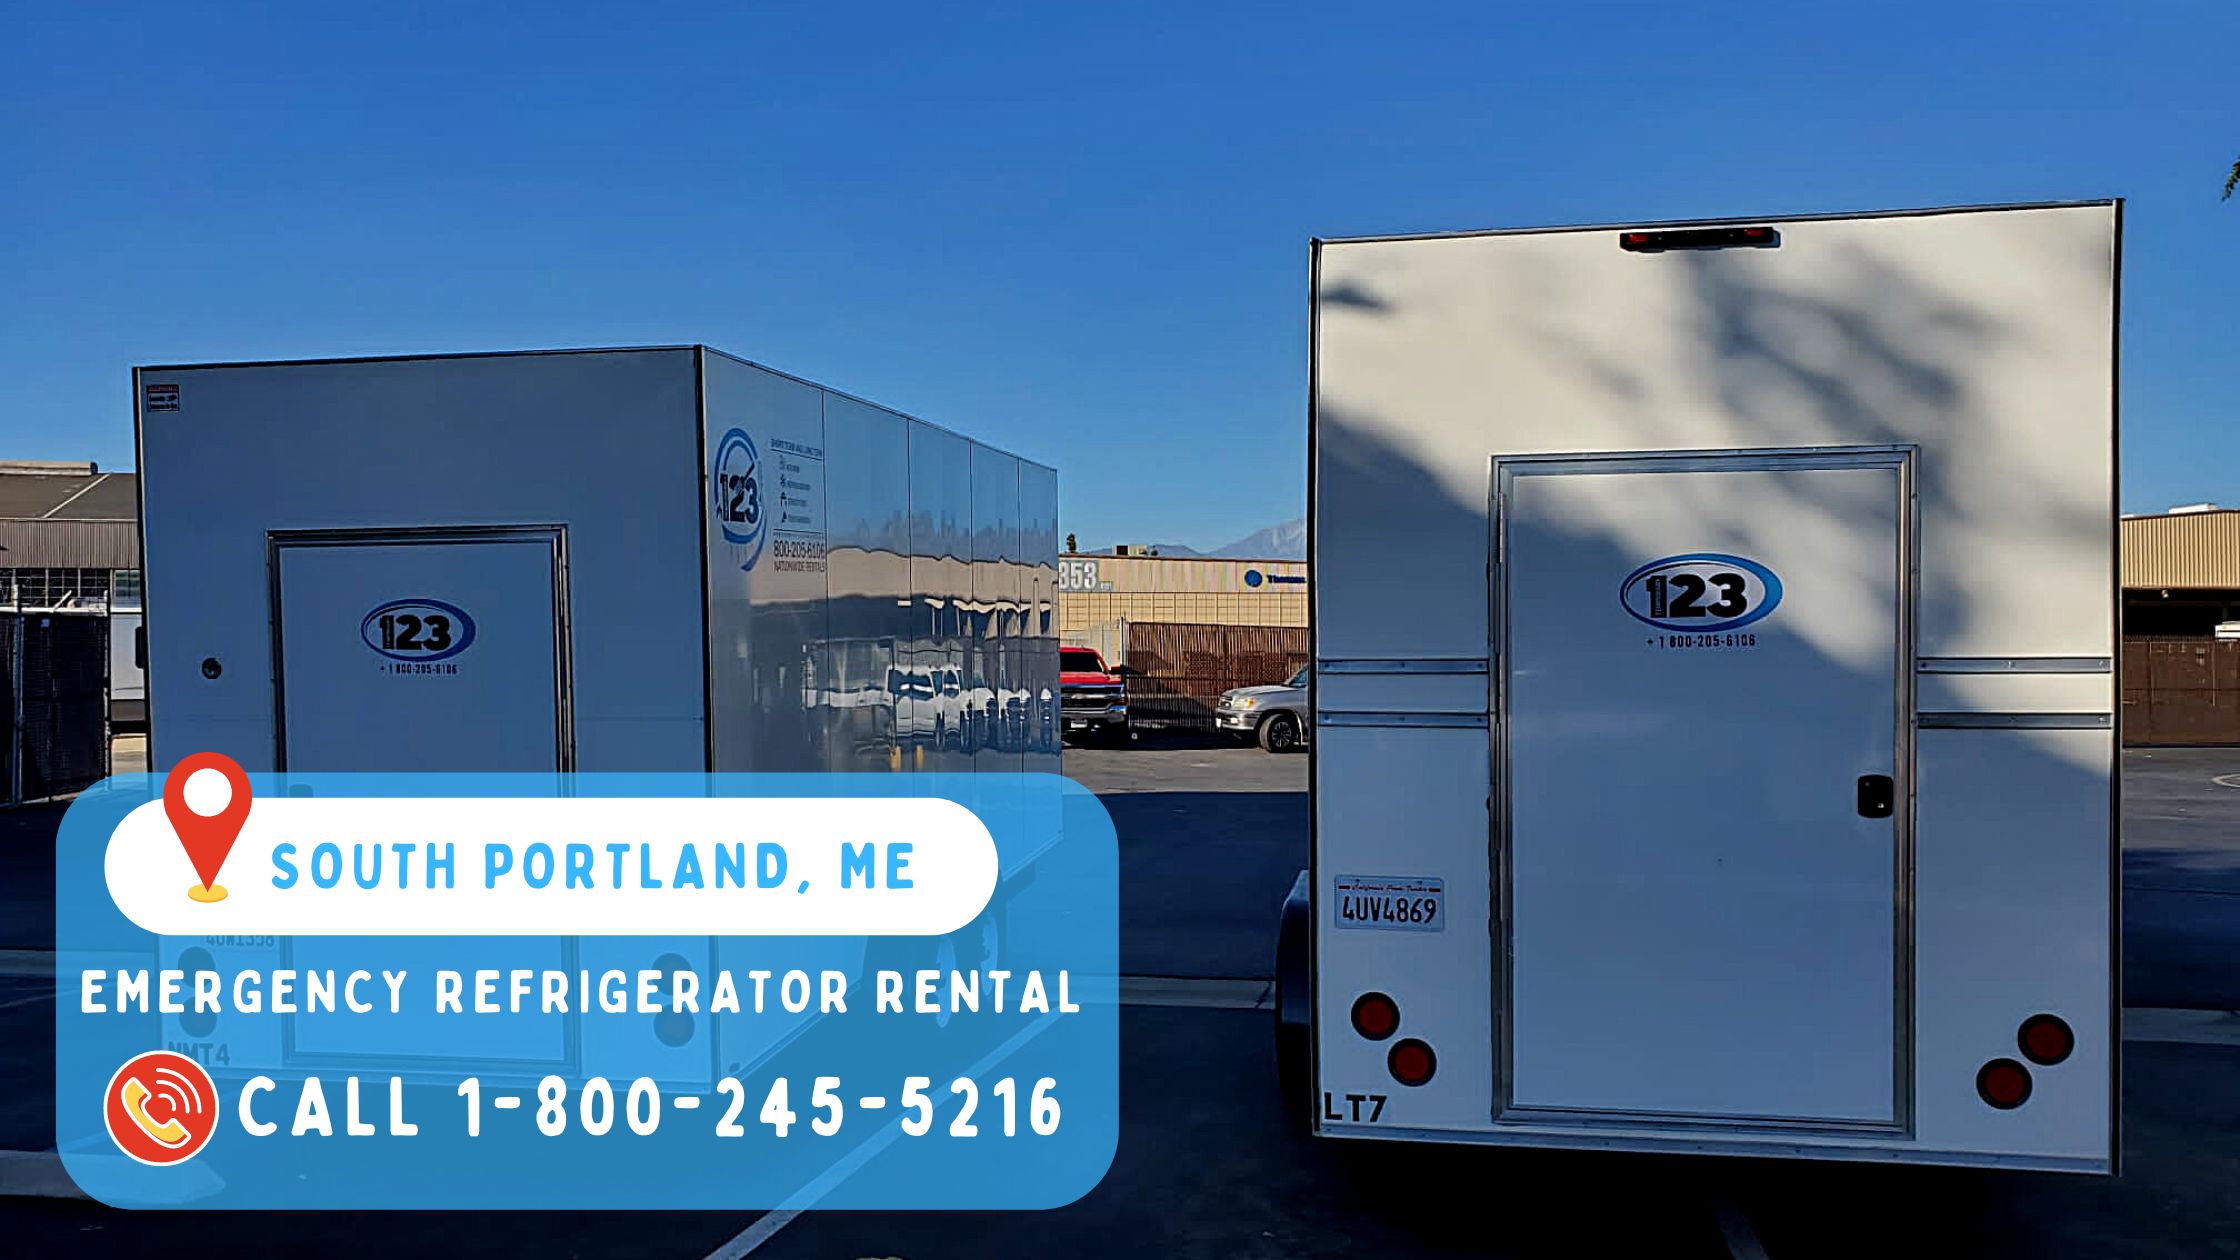 Emergency refrigerator rental in South Portland